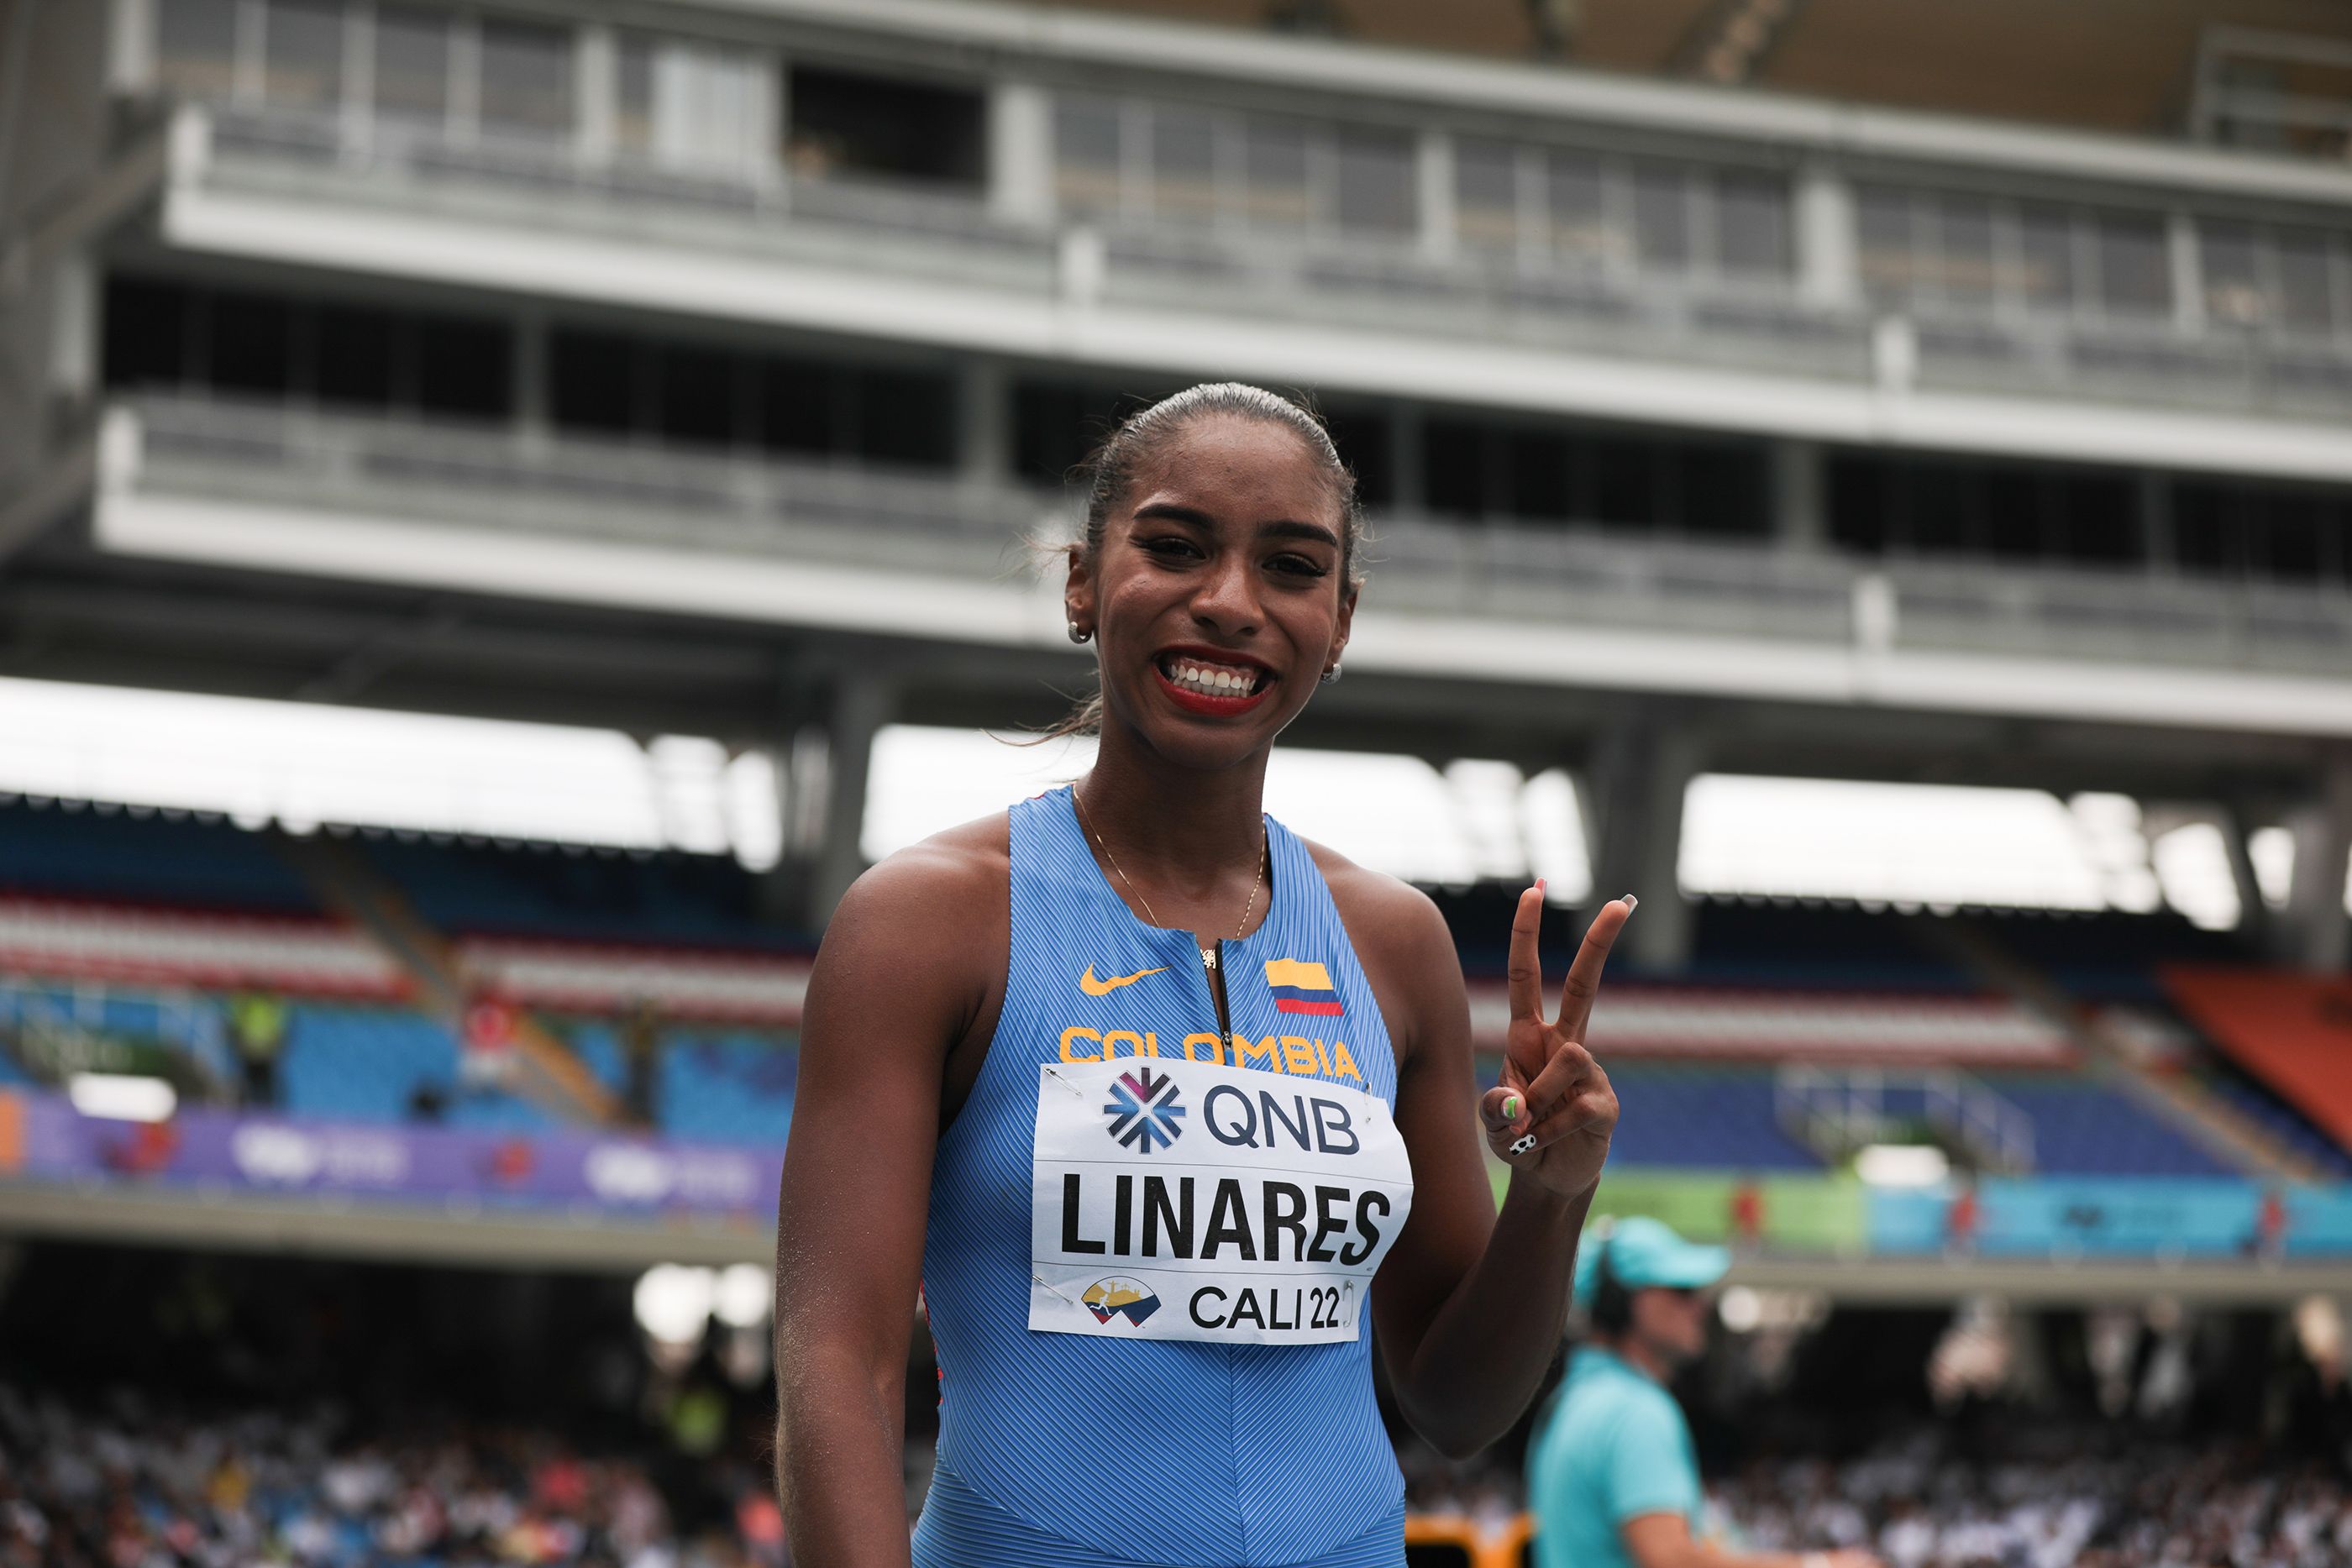 La colombiana Natalia Linares celebra su clasificación a la final de salto de longitud del Mundial Sub 20 Cali 22